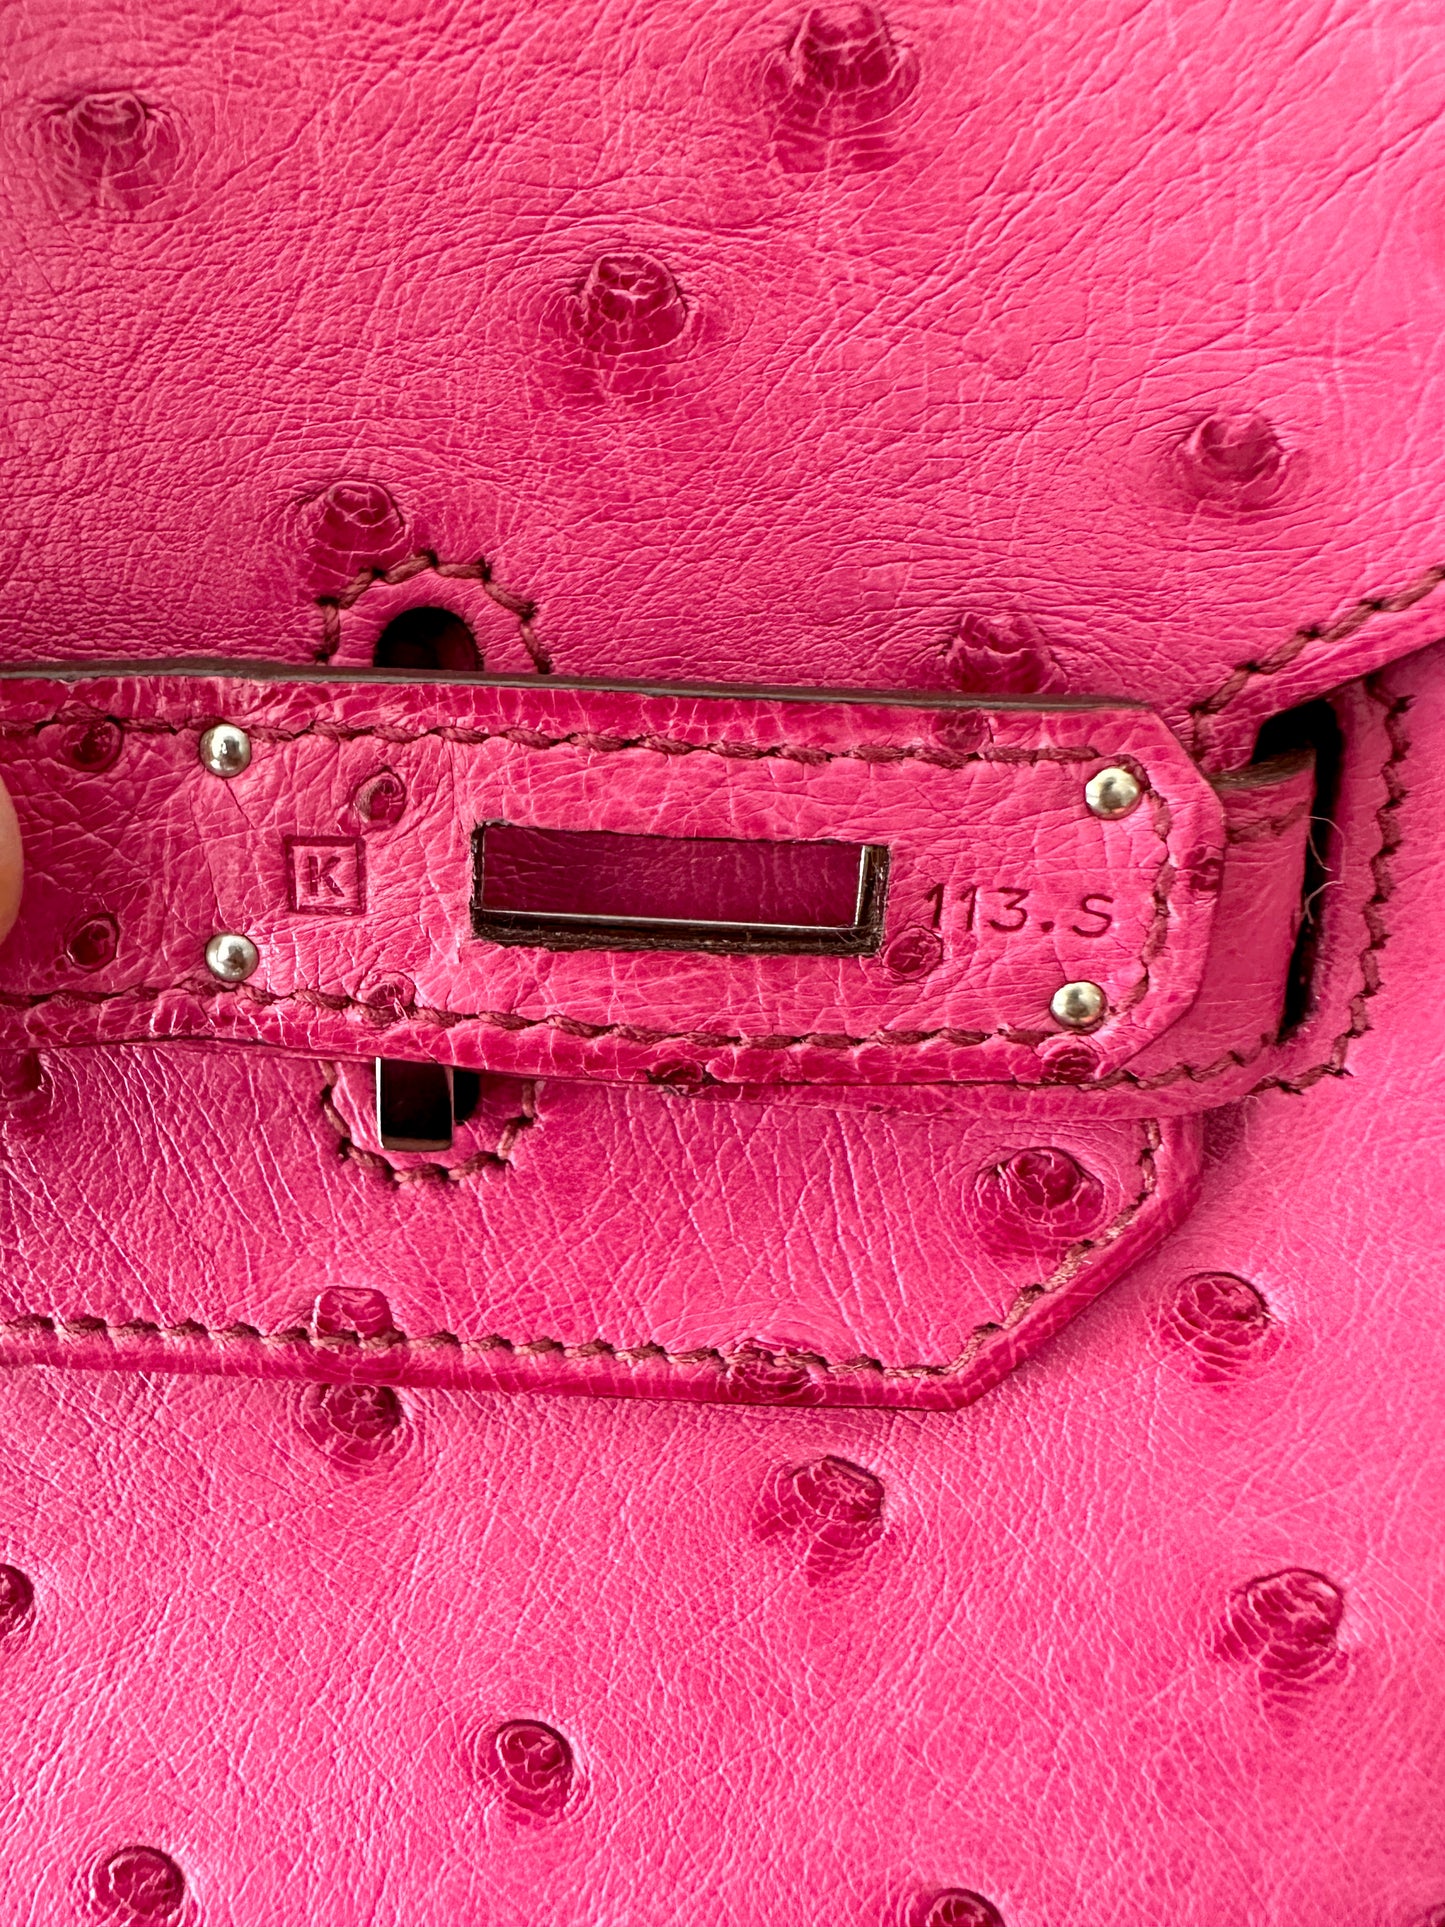 The #gilmoregirls #birkin in Pink Ostritch skin, 35cm.